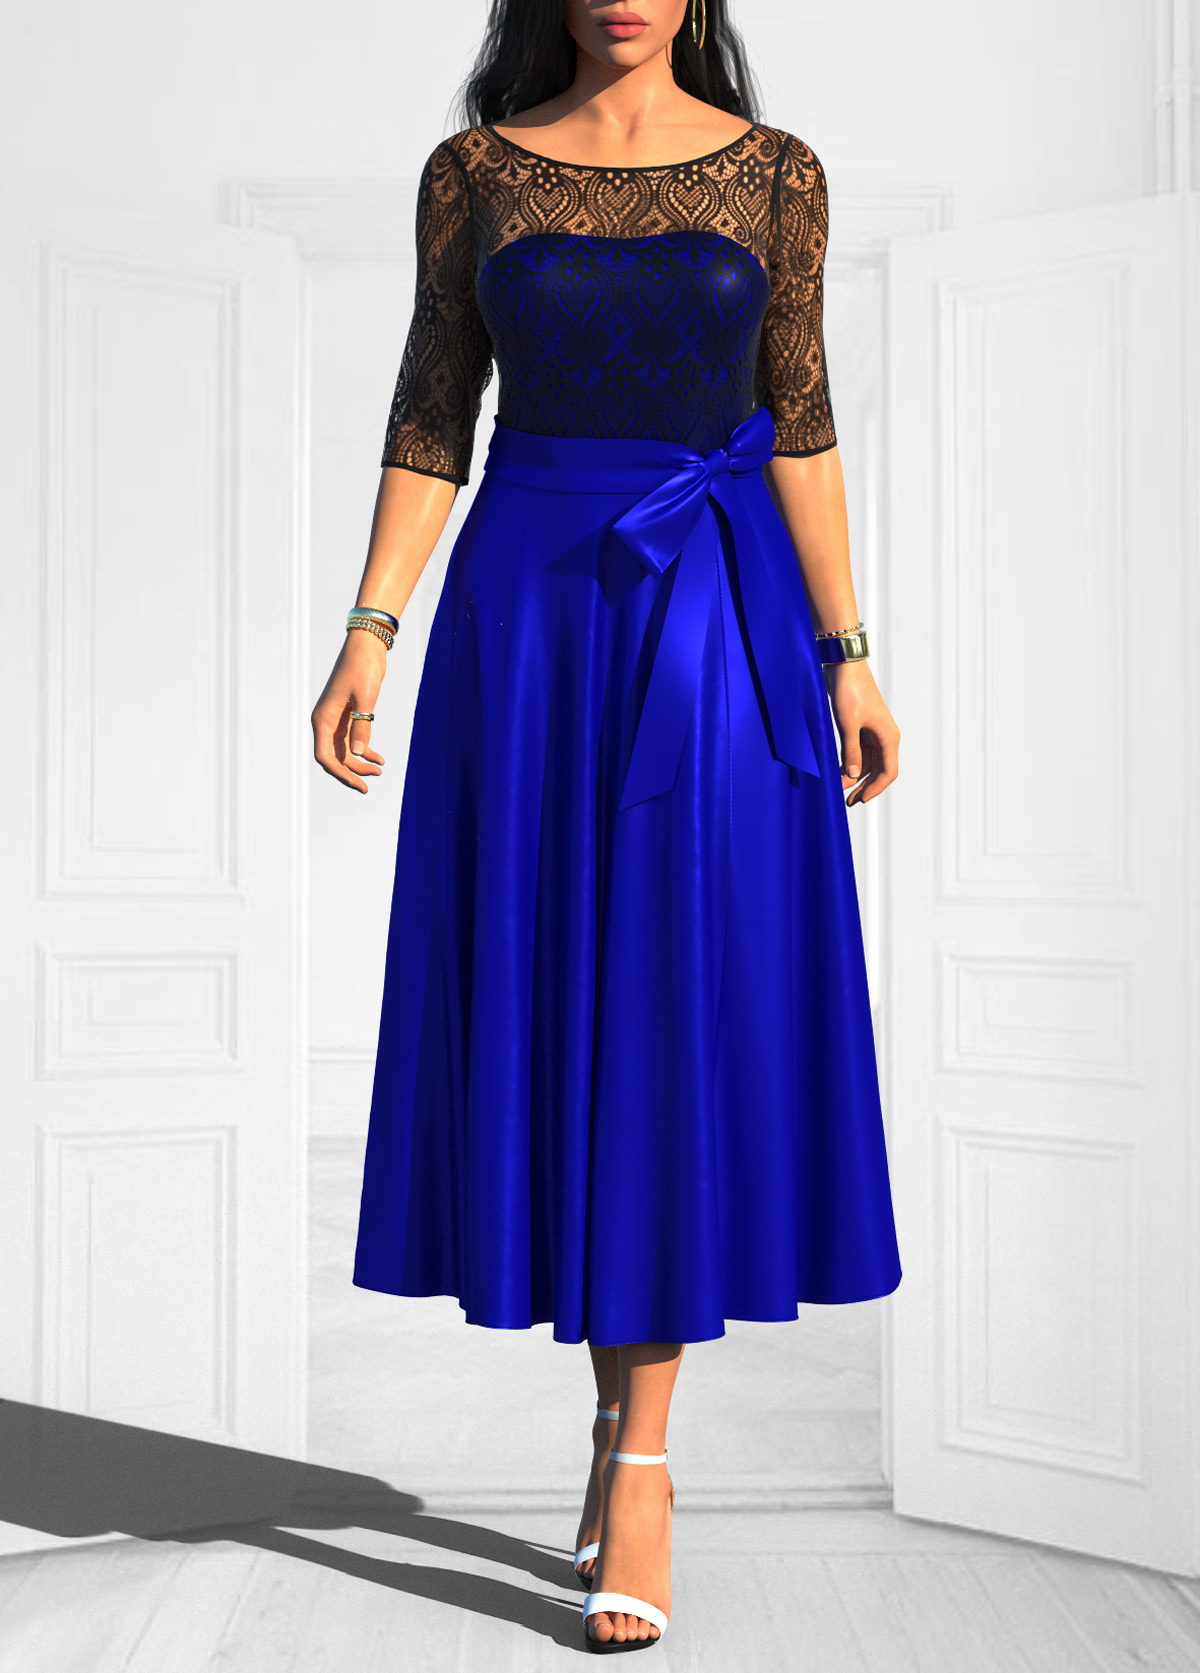 ROTITA Bowknot Royal Blue Lace Stitching Belted Dress